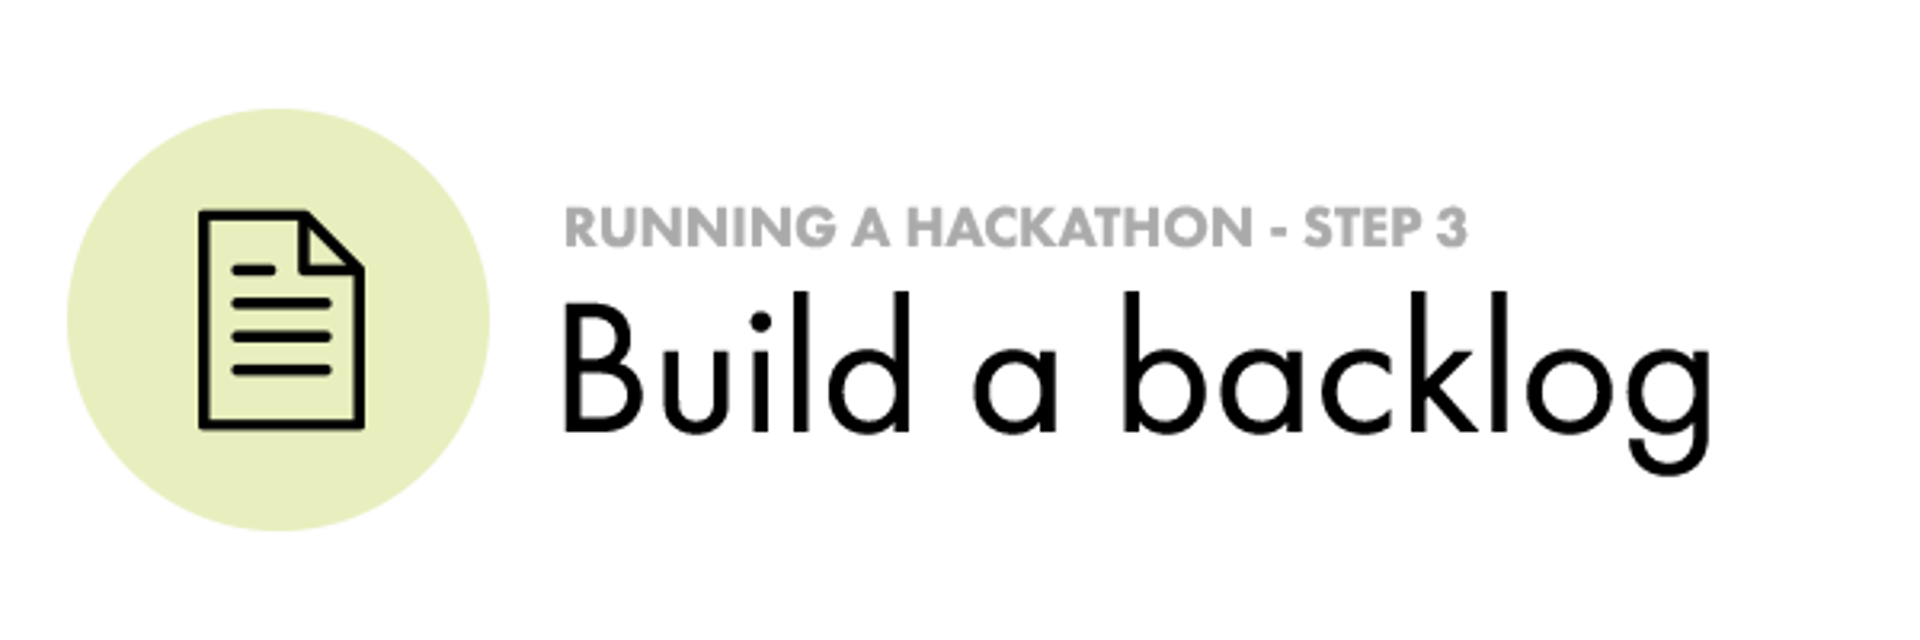 Build Backlog for Hackathon